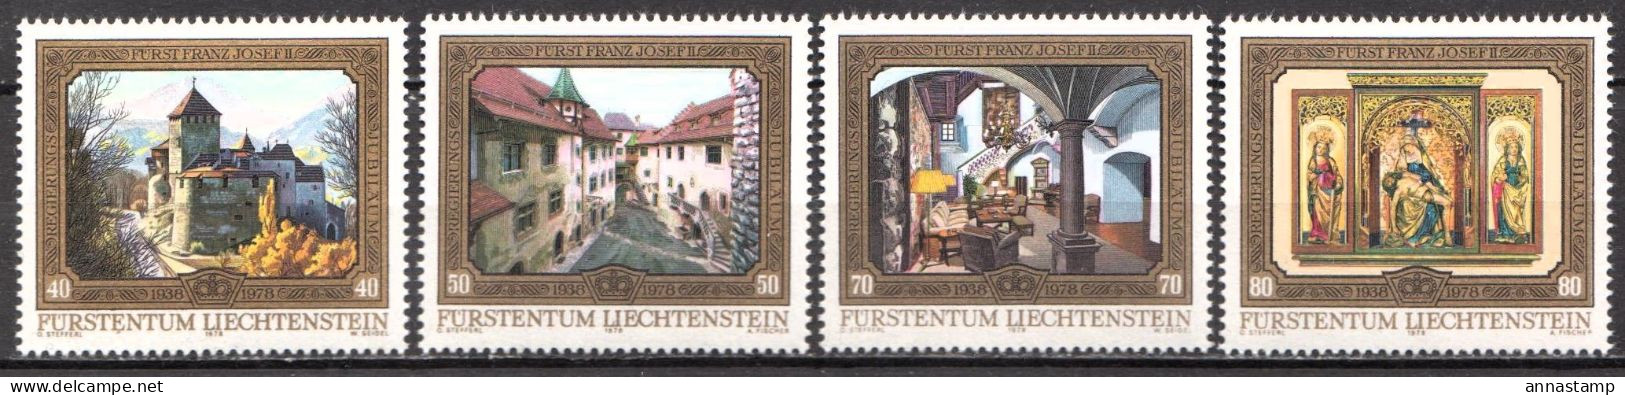 Liechtenstein MNH Set - Castles